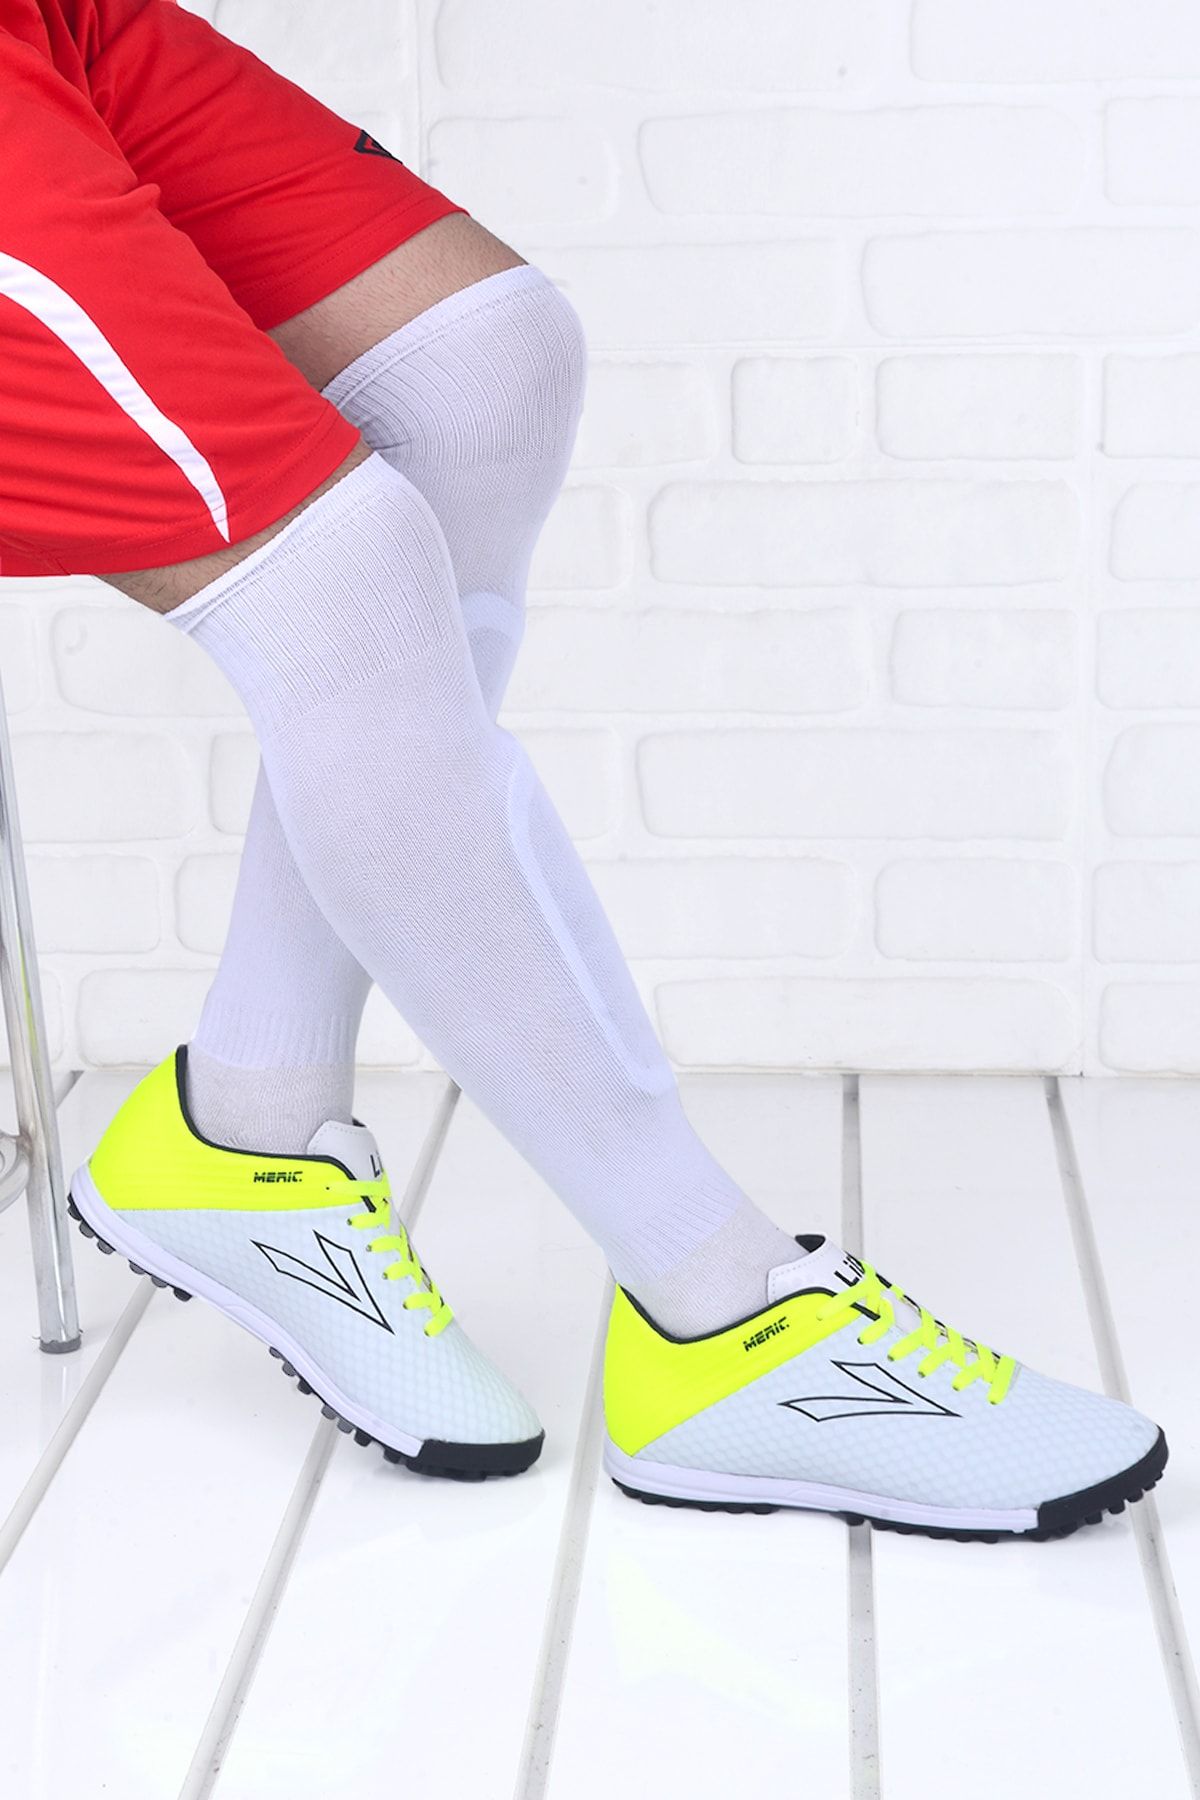 Genel Markalar Meriç Hm Halı Saha Erkek Spor Futbol Ayakkabısı Beyaz - Sarı